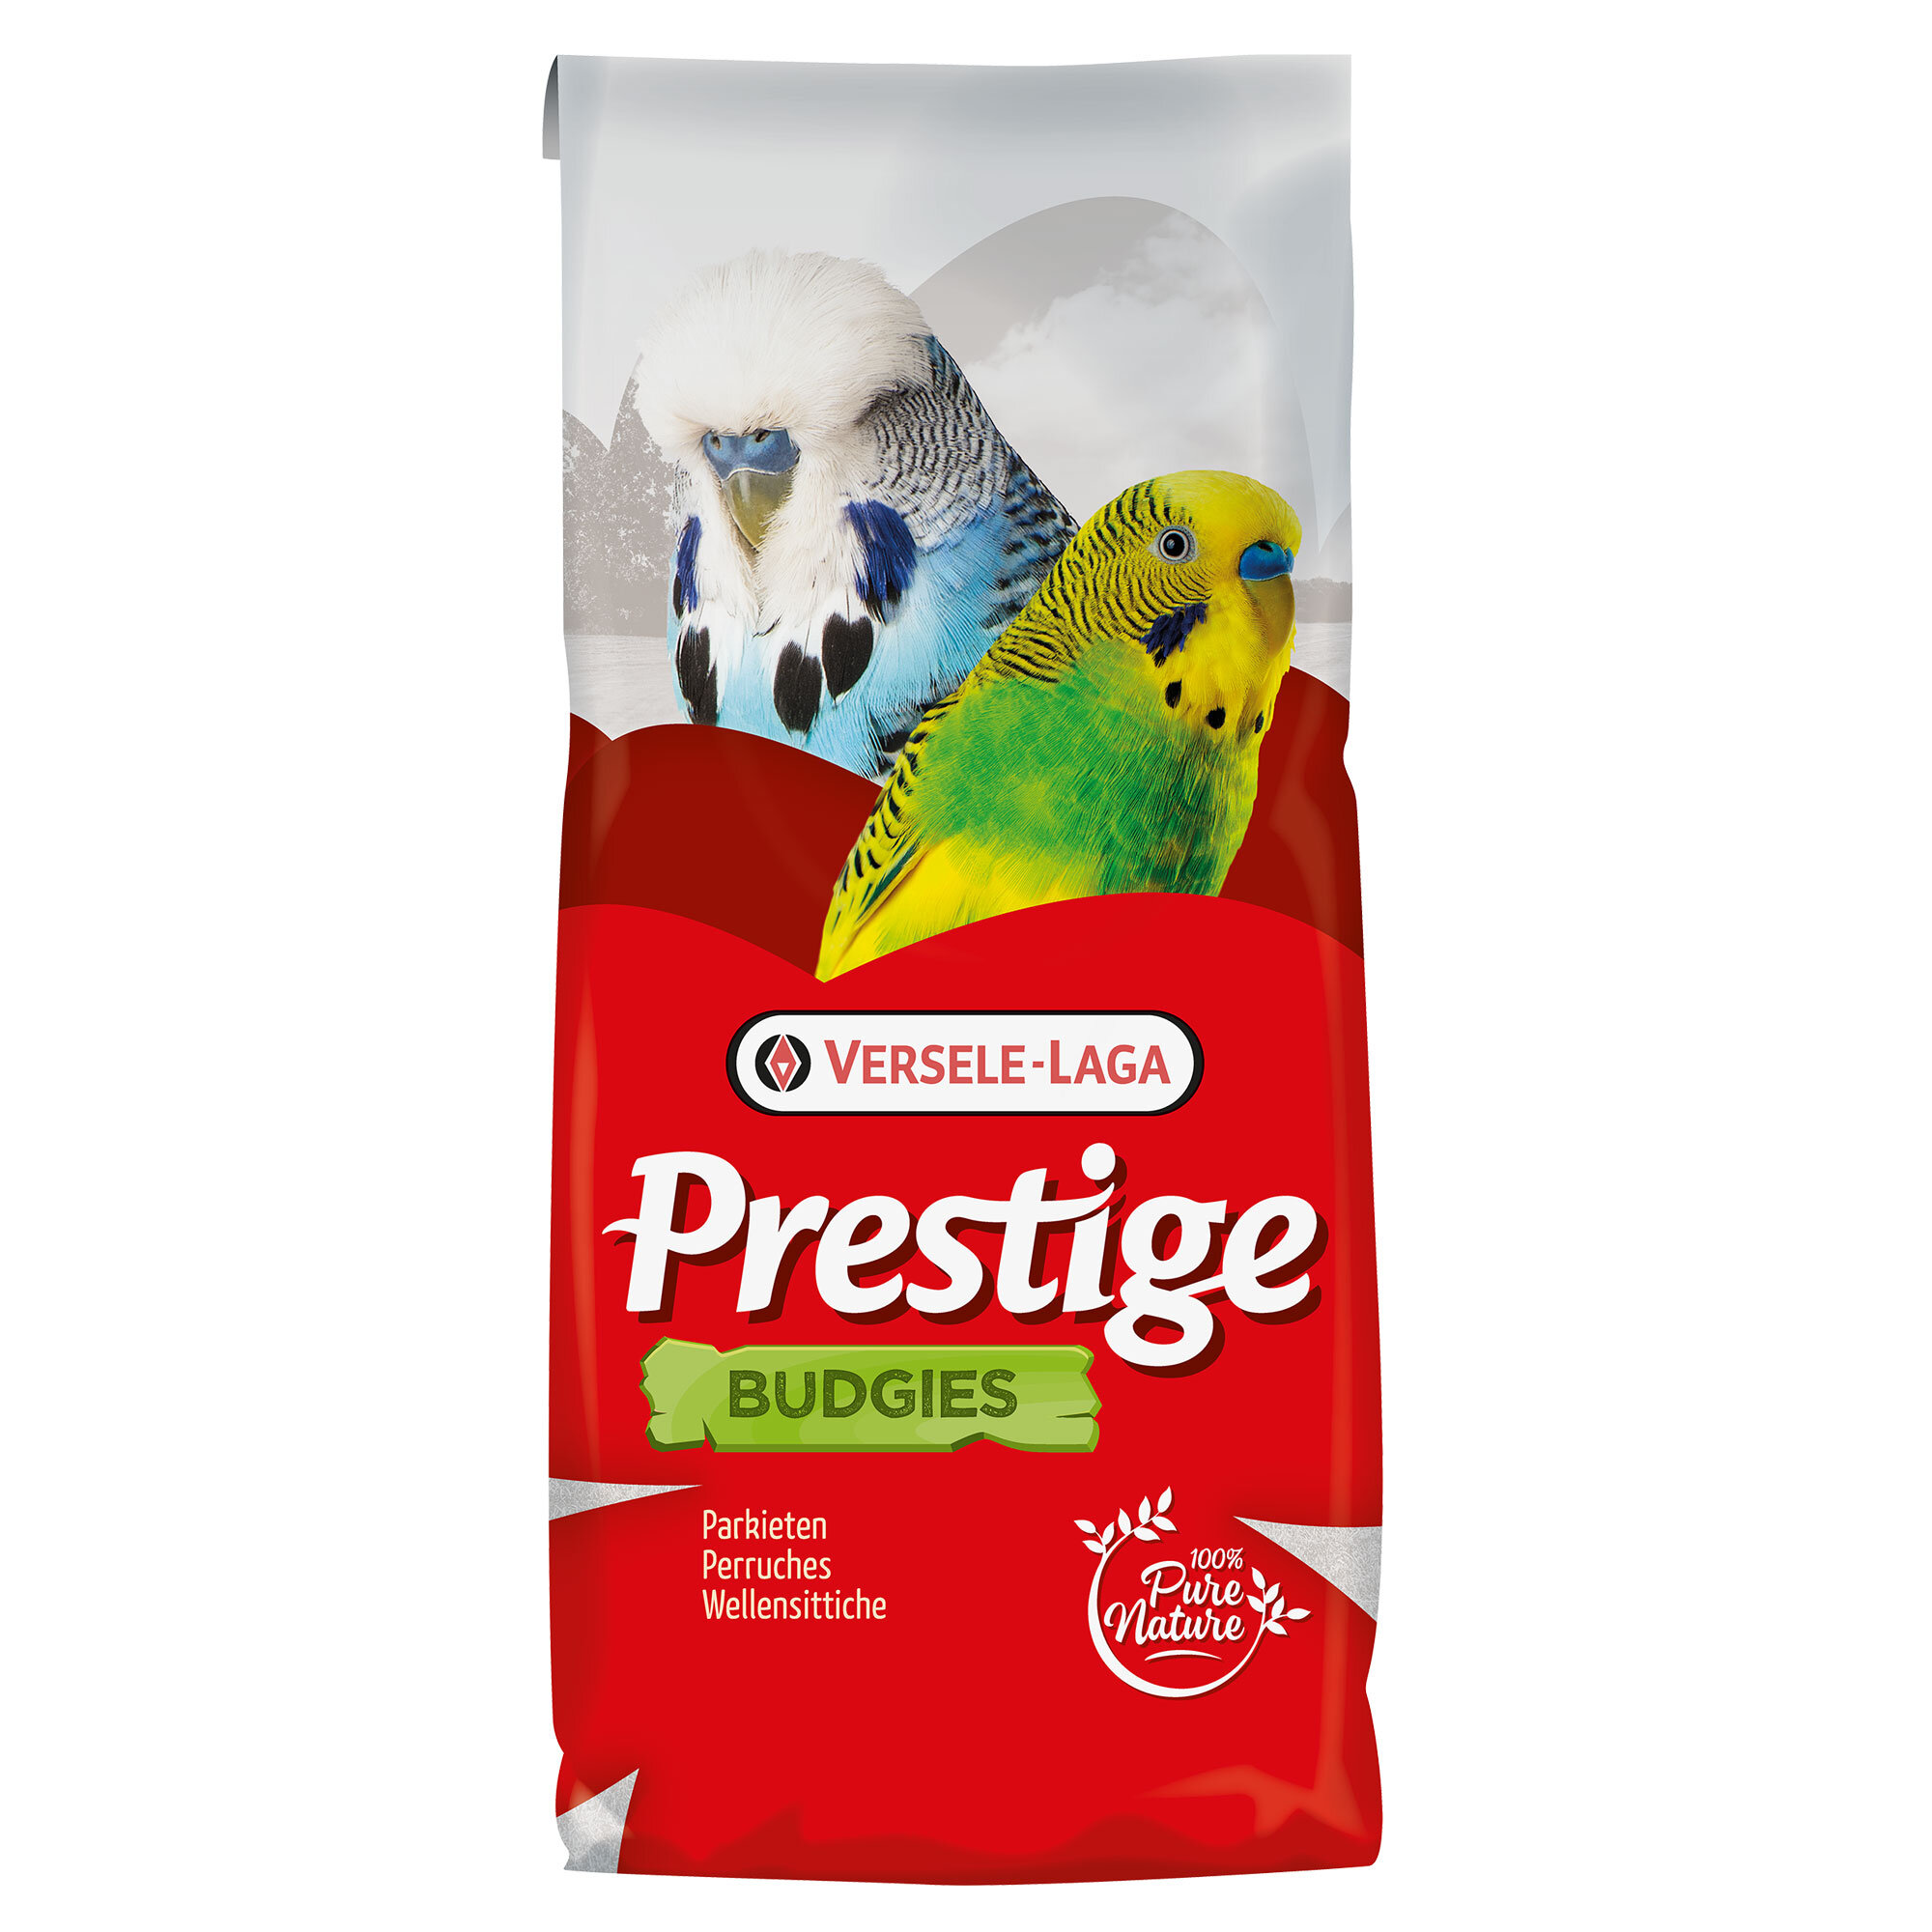 Versele Laga Budgie Prestige IMD Budgie Food  20kg